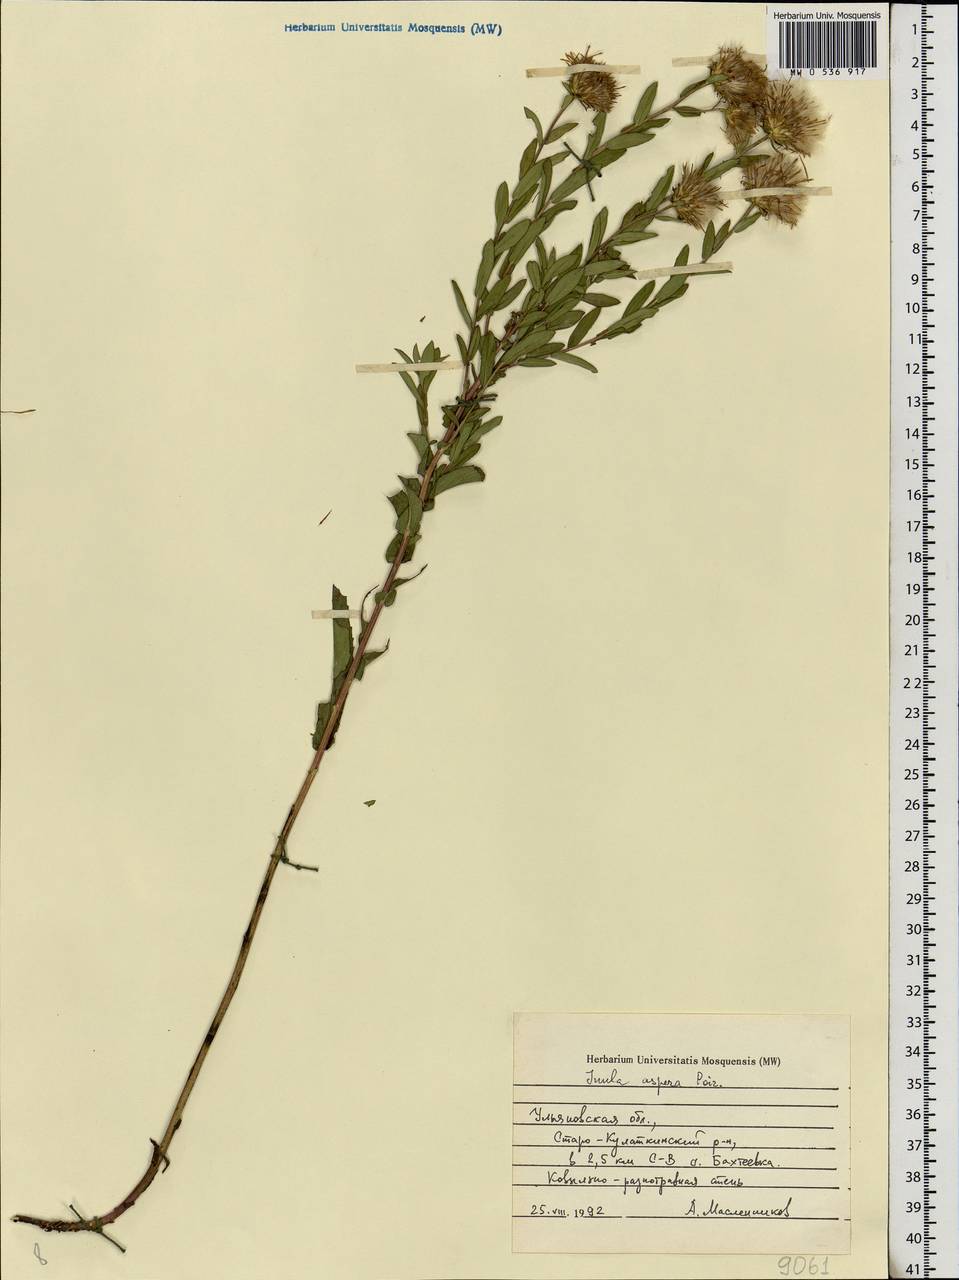 Pentanema salicinum subsp. asperum (Poir.) Mosyakin, Восточная Европа, Средневолжский район (E8) (Россия)